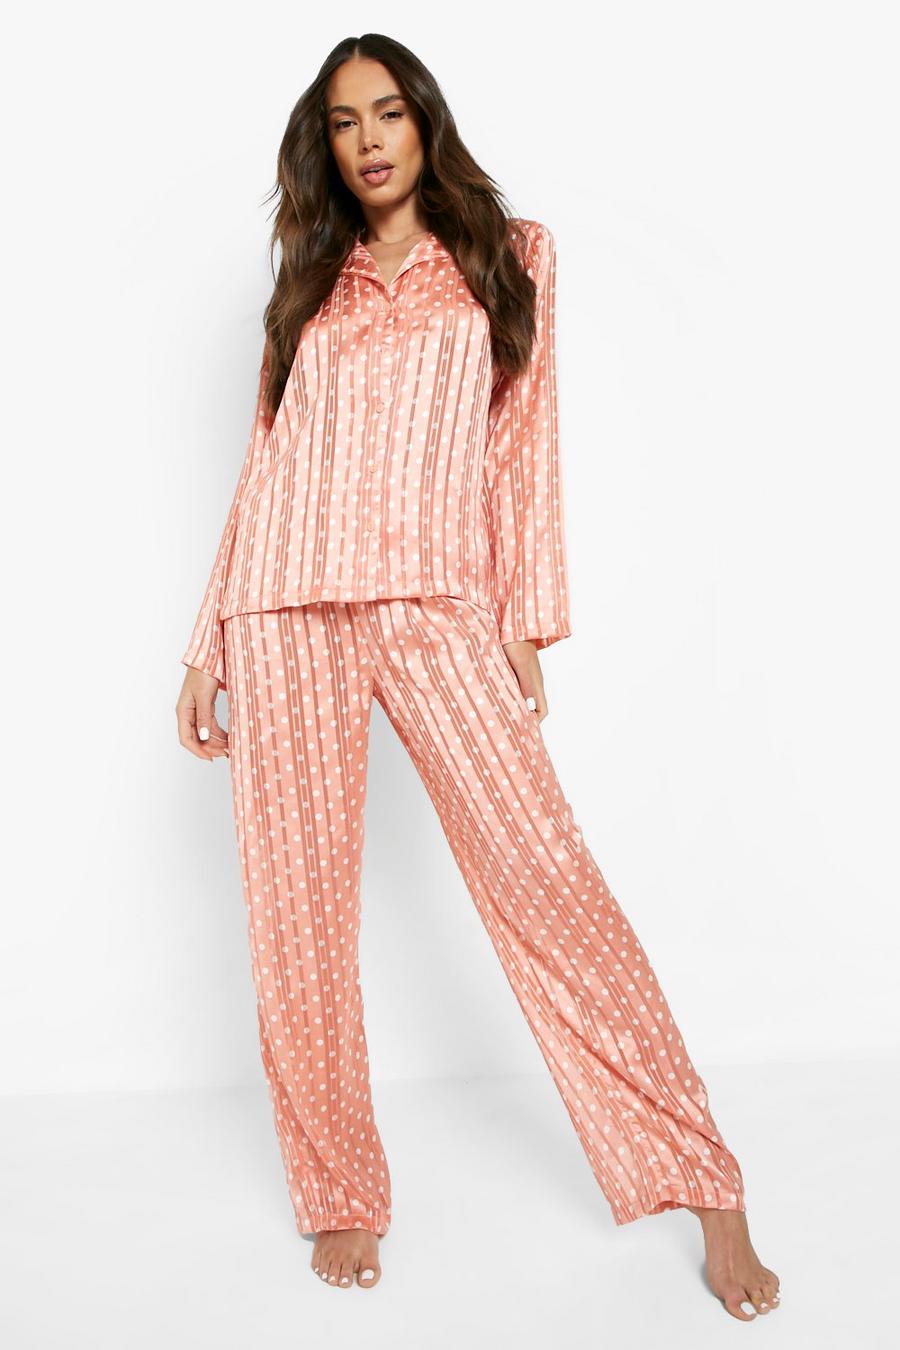 Gepunktetes Satin Pyjama-Set mit Streifen, Camel beige